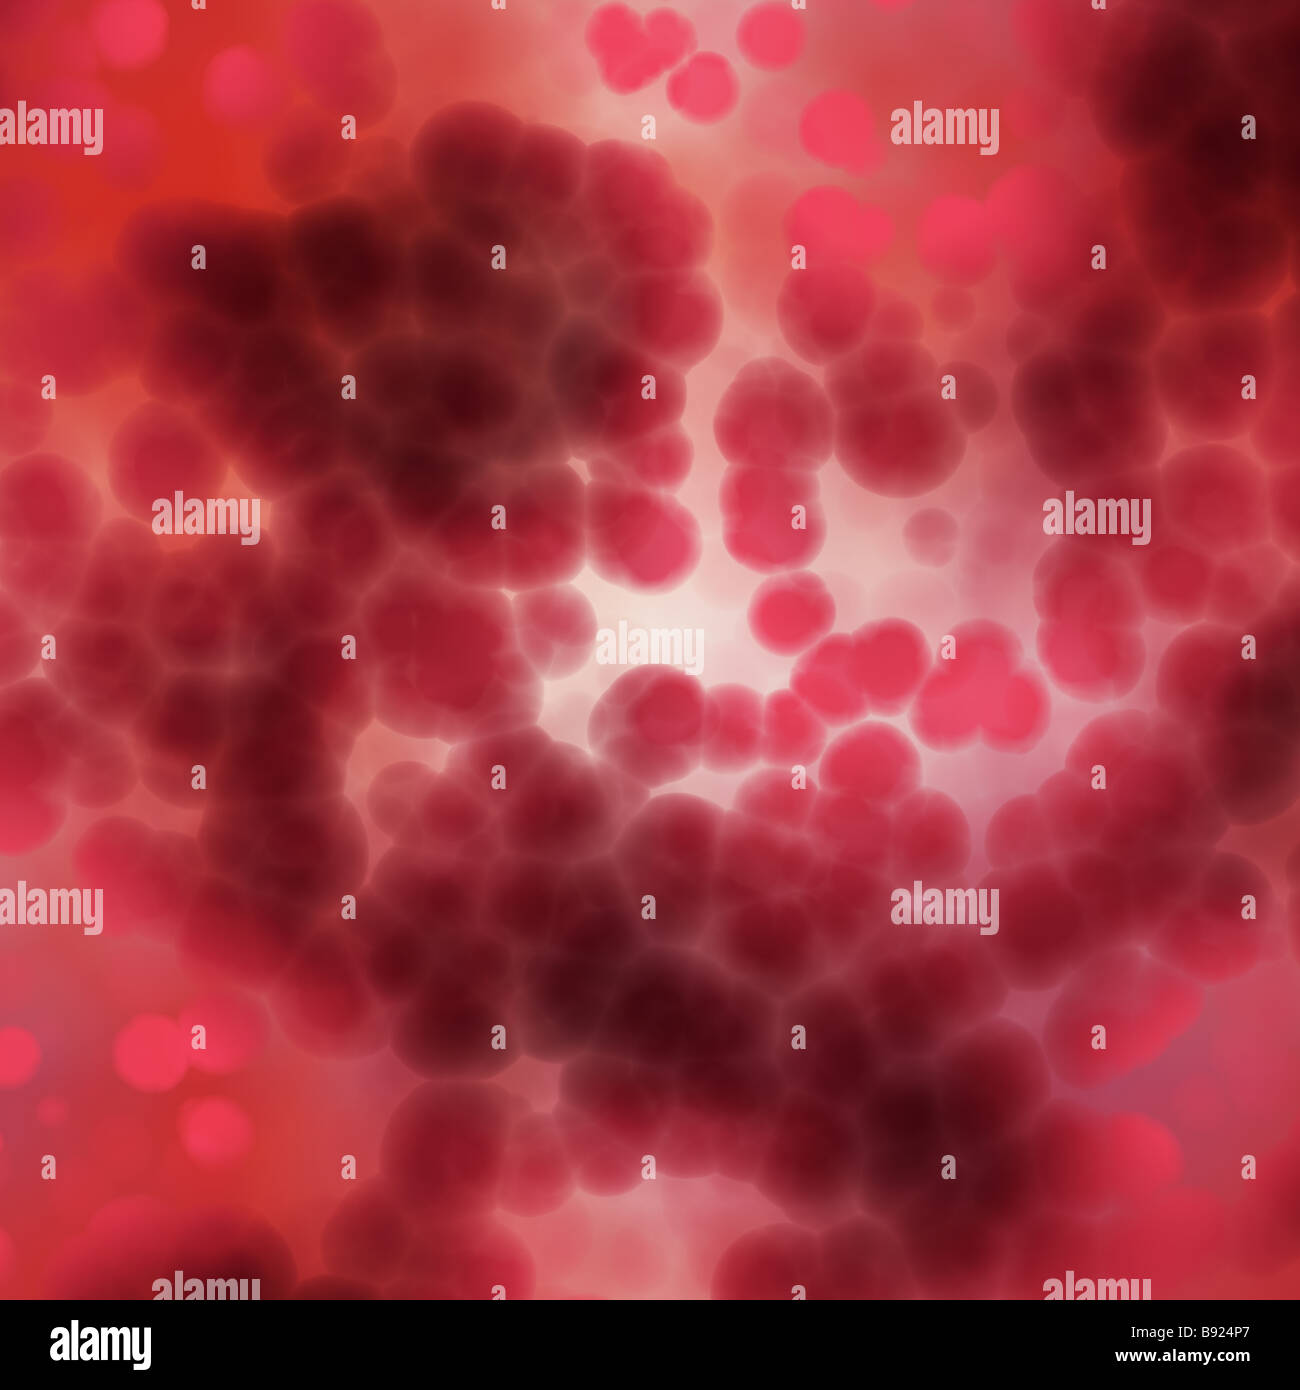 Grande image de cellules rouges sous le microscope Banque D'Images